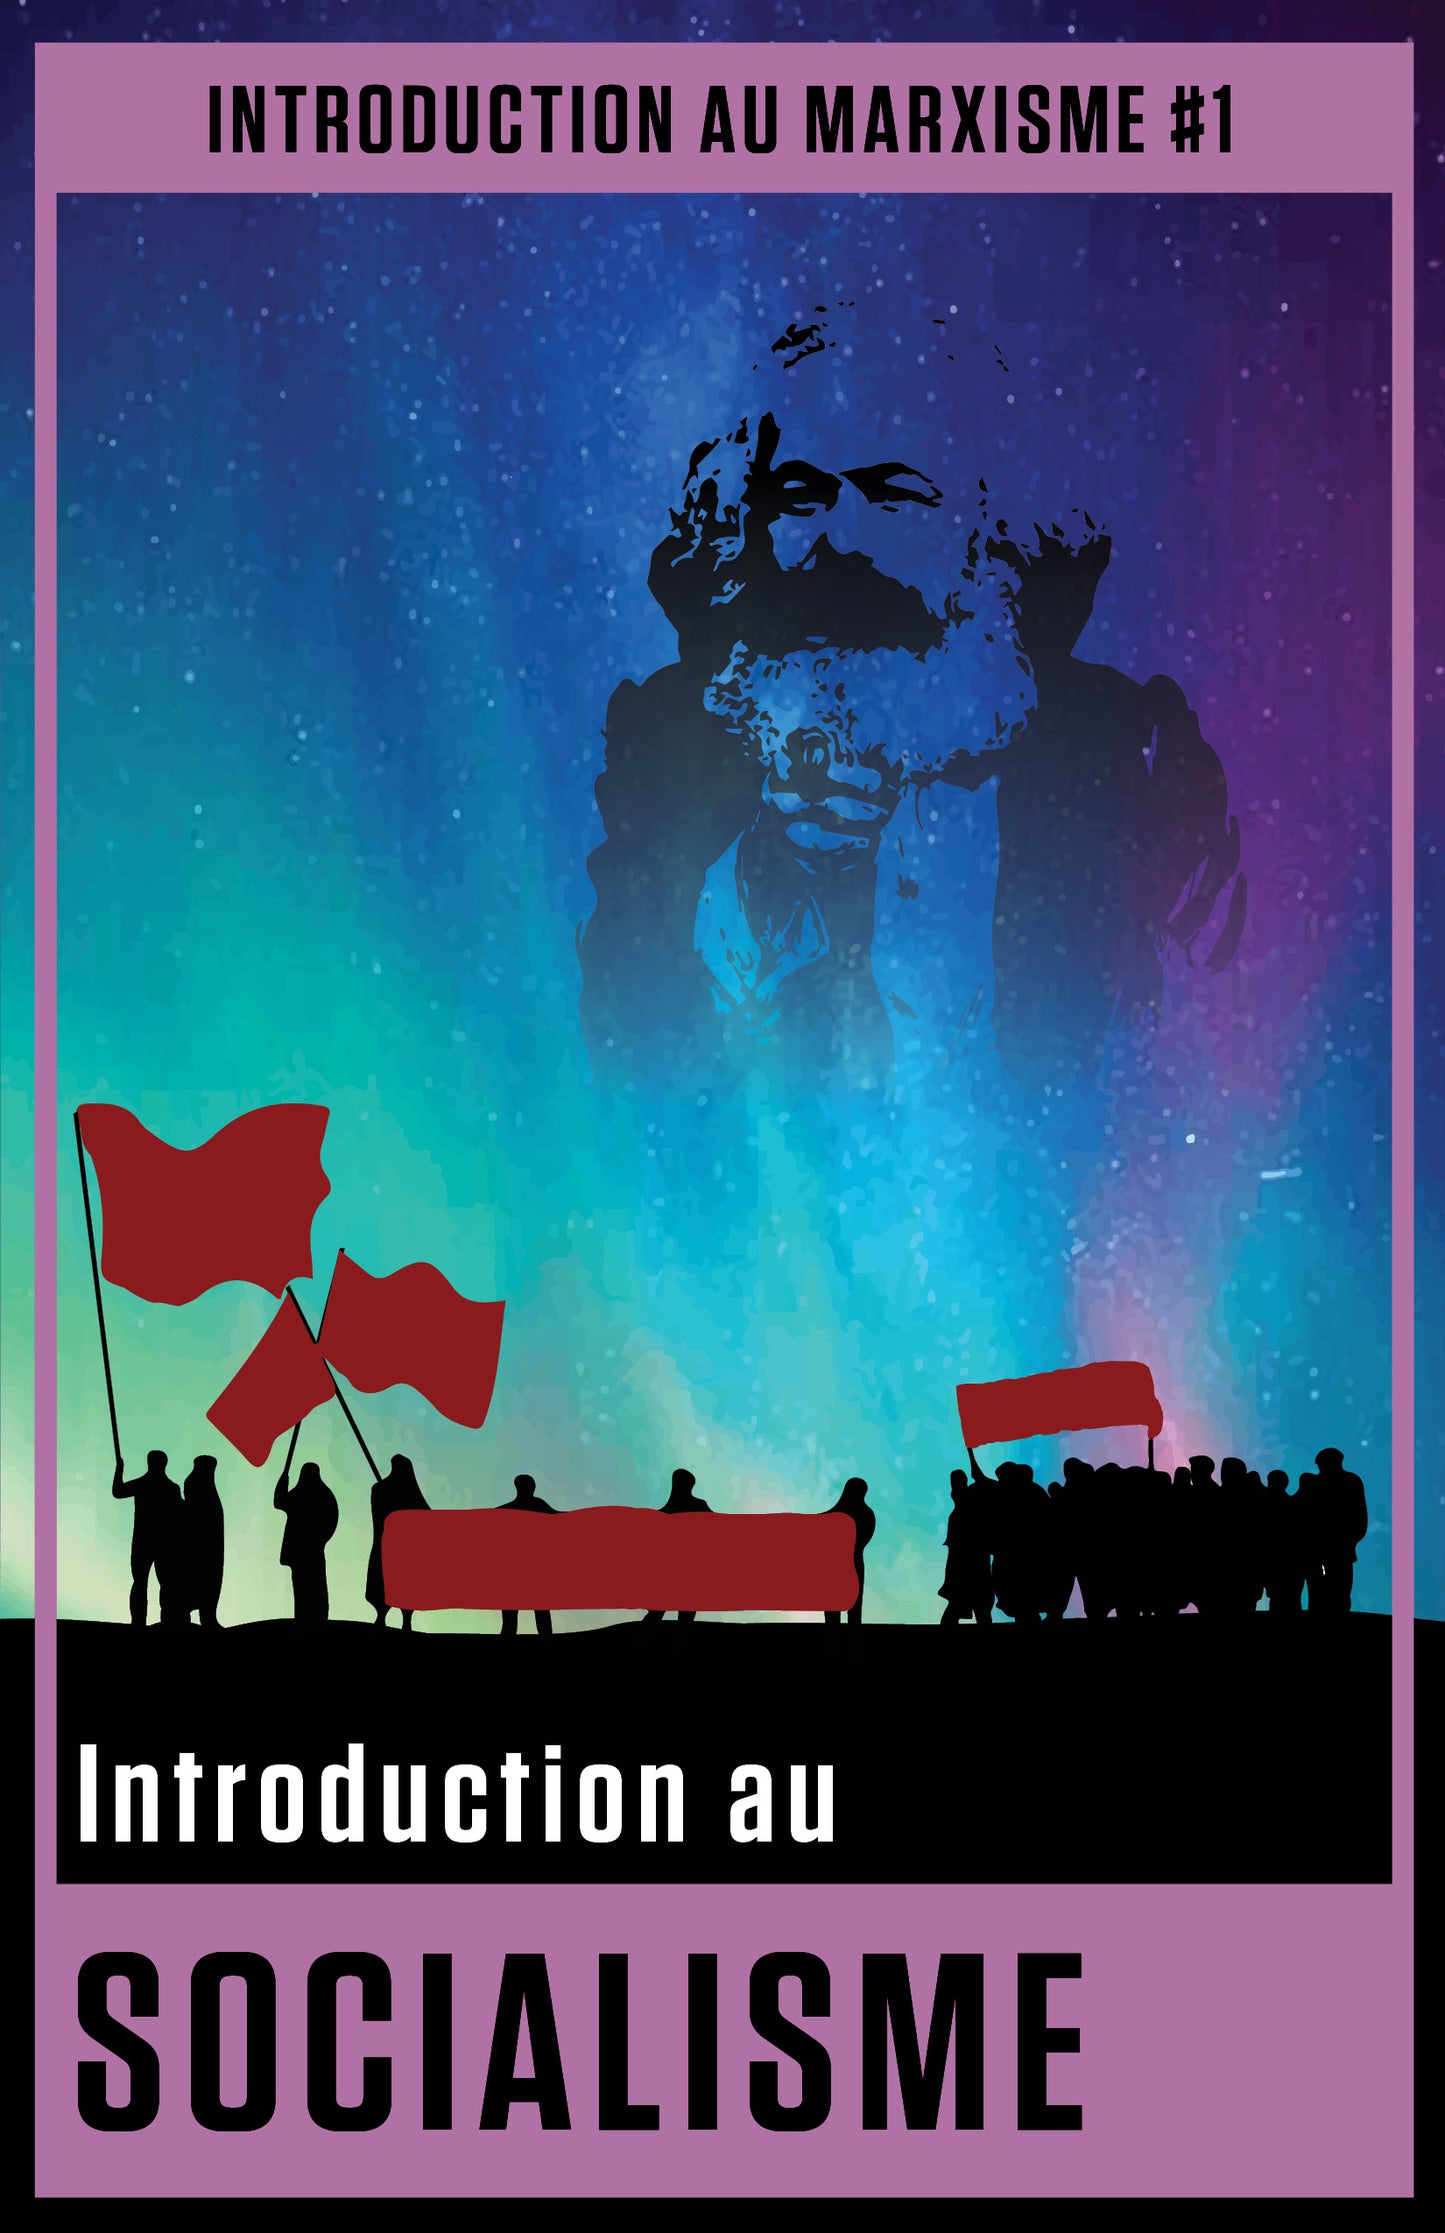 Introduction au marxisme #1: Introduction au socialisme